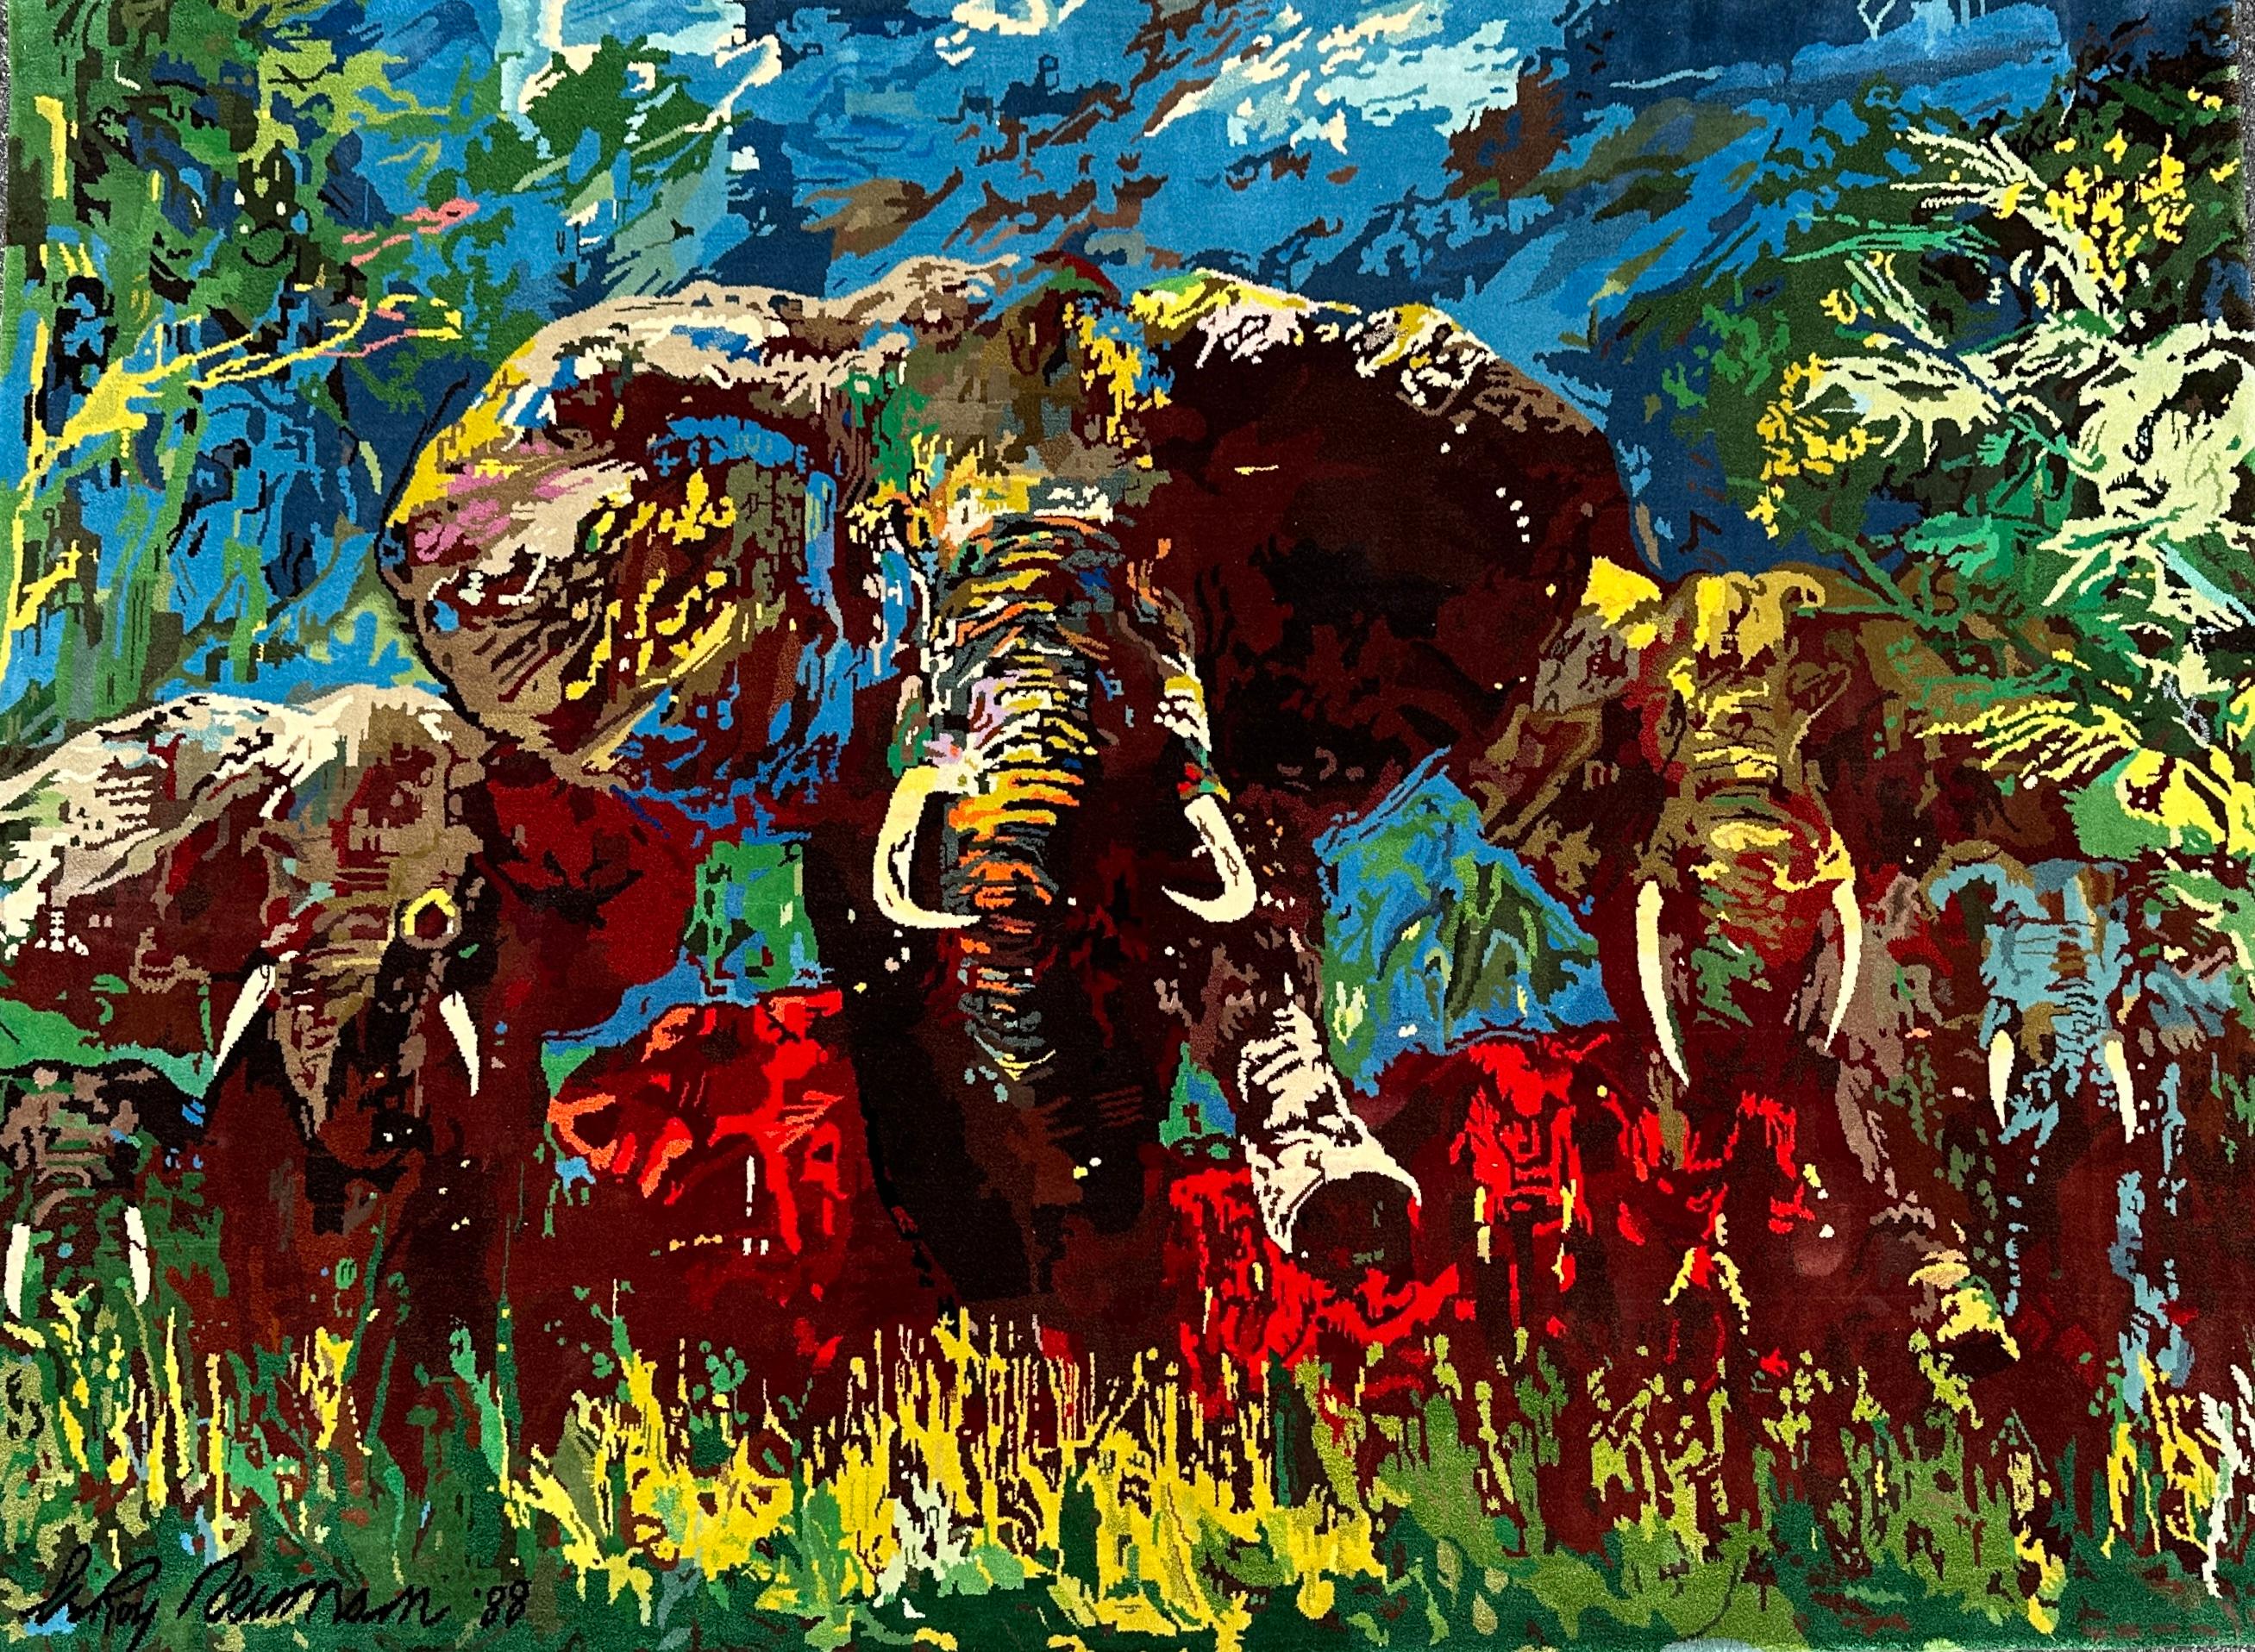 LeRoy Neiman (Amerikaner, 1921-2012) Elefant  Stampede Silk Tapestry, handsigniert.
59 x 80 Zoll (149,9 x  203,2 cm) 
Von und Ausgabe von  36/88.
Herausgegeben von  Knoedler Publishing, New York.